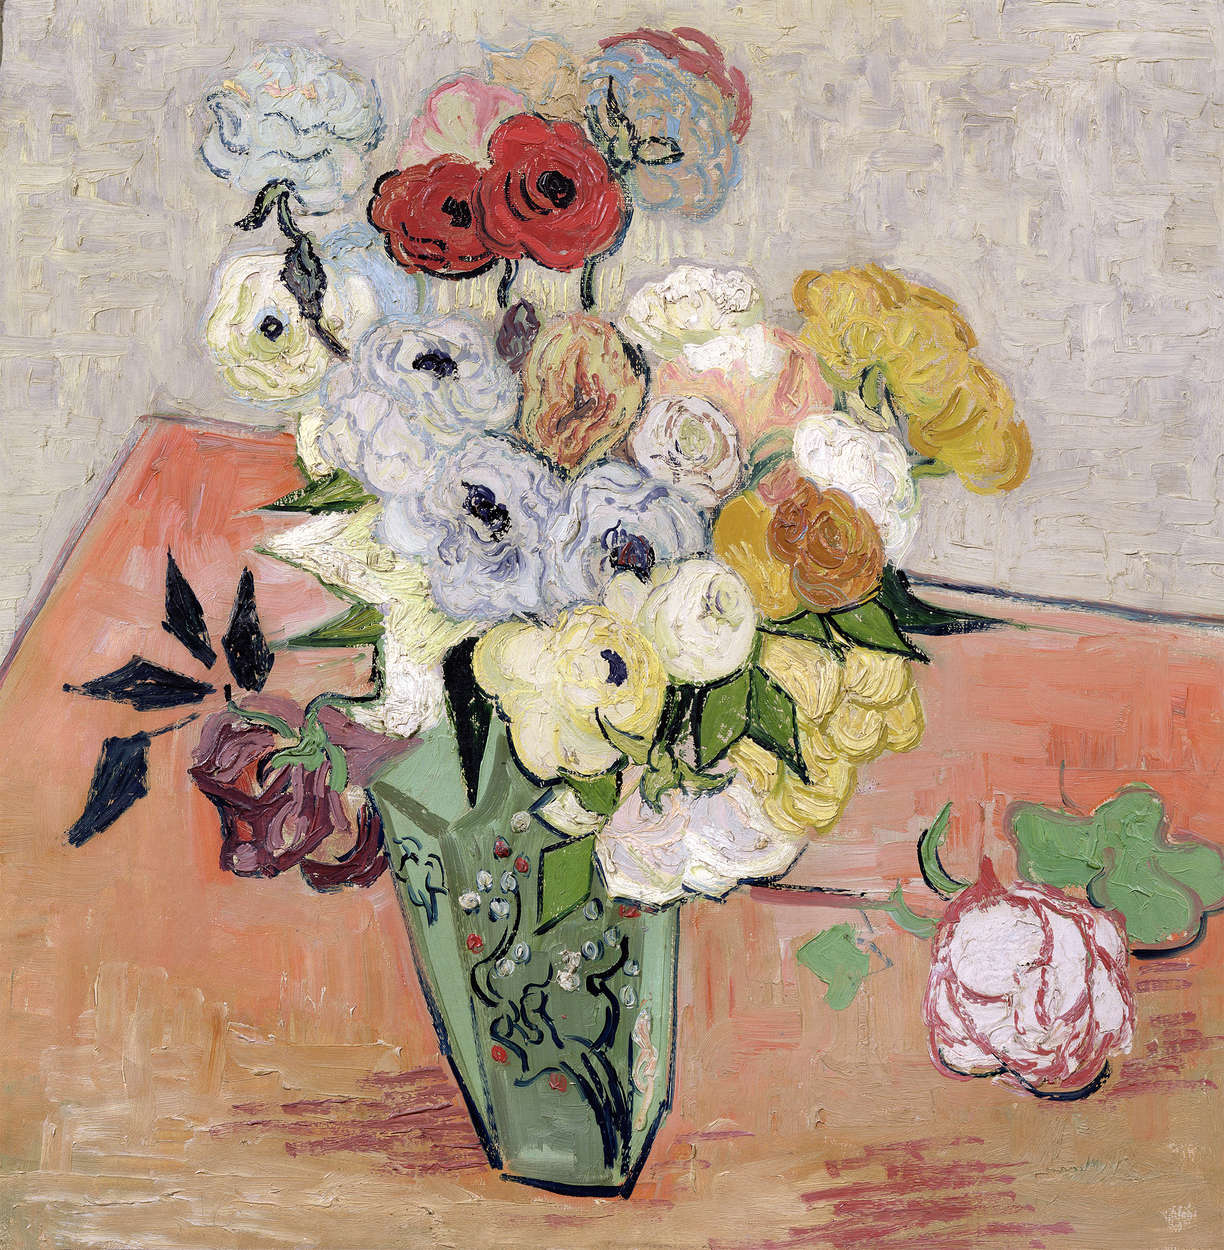             Fototapete "Stillleben mit japanischer Vase Rosen und Anemonen" von Vincent van Gogh
        